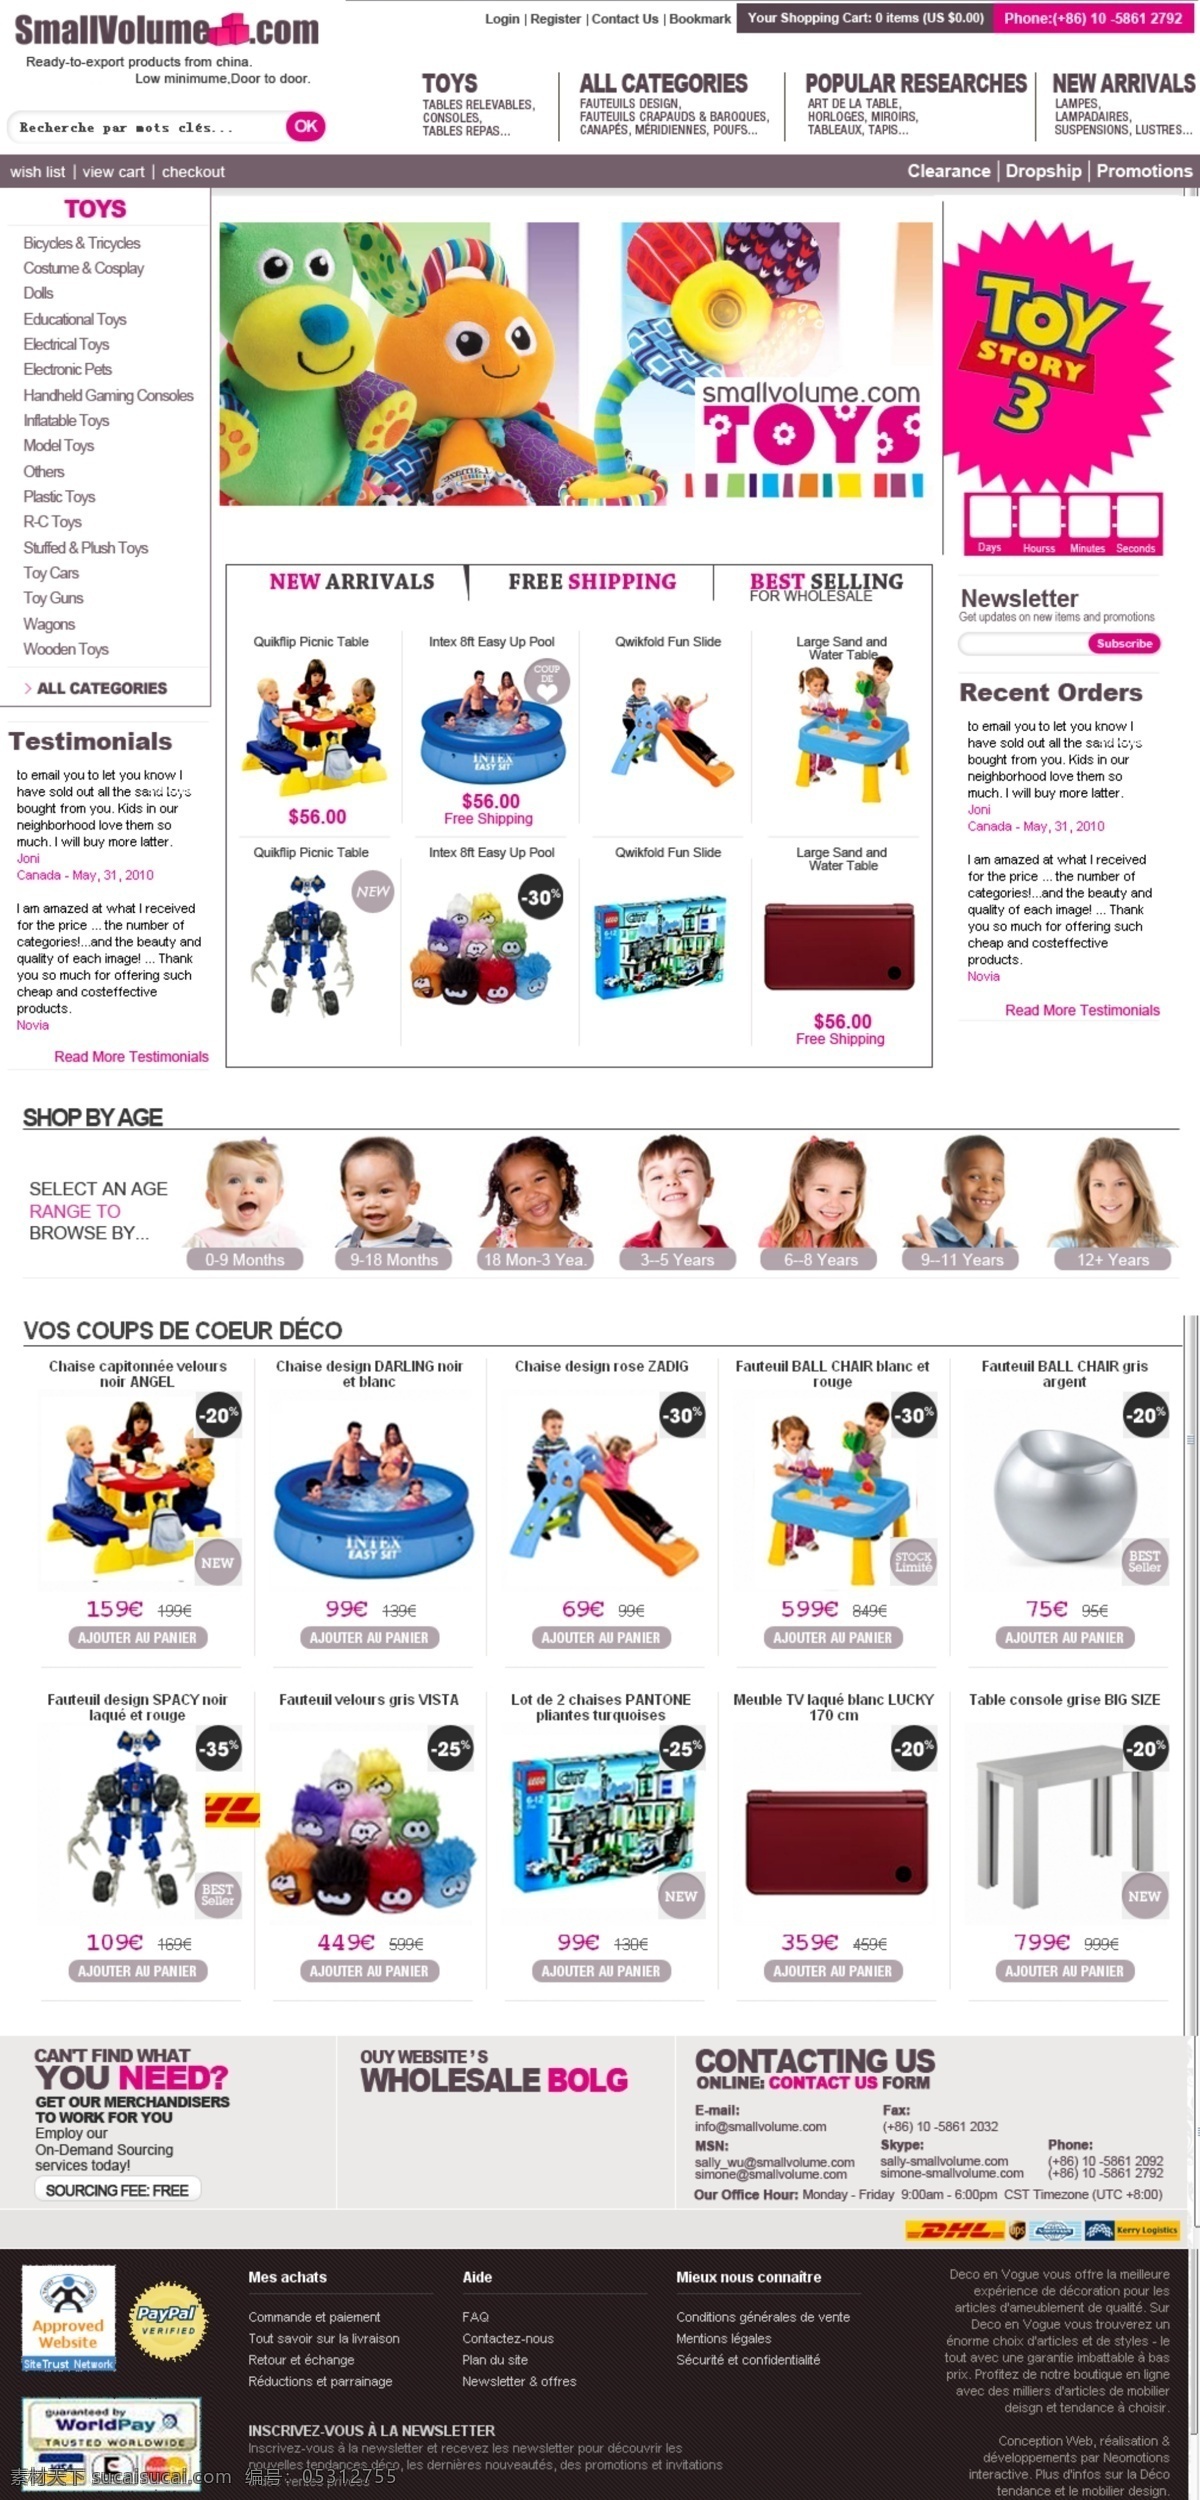 banner 布娃娃 儿童玩具 滑梯 毛绒玩具 欧美模板 外国儿童 网页设计 toys 游泳池 智力玩具 网页模板 源文件 网页素材